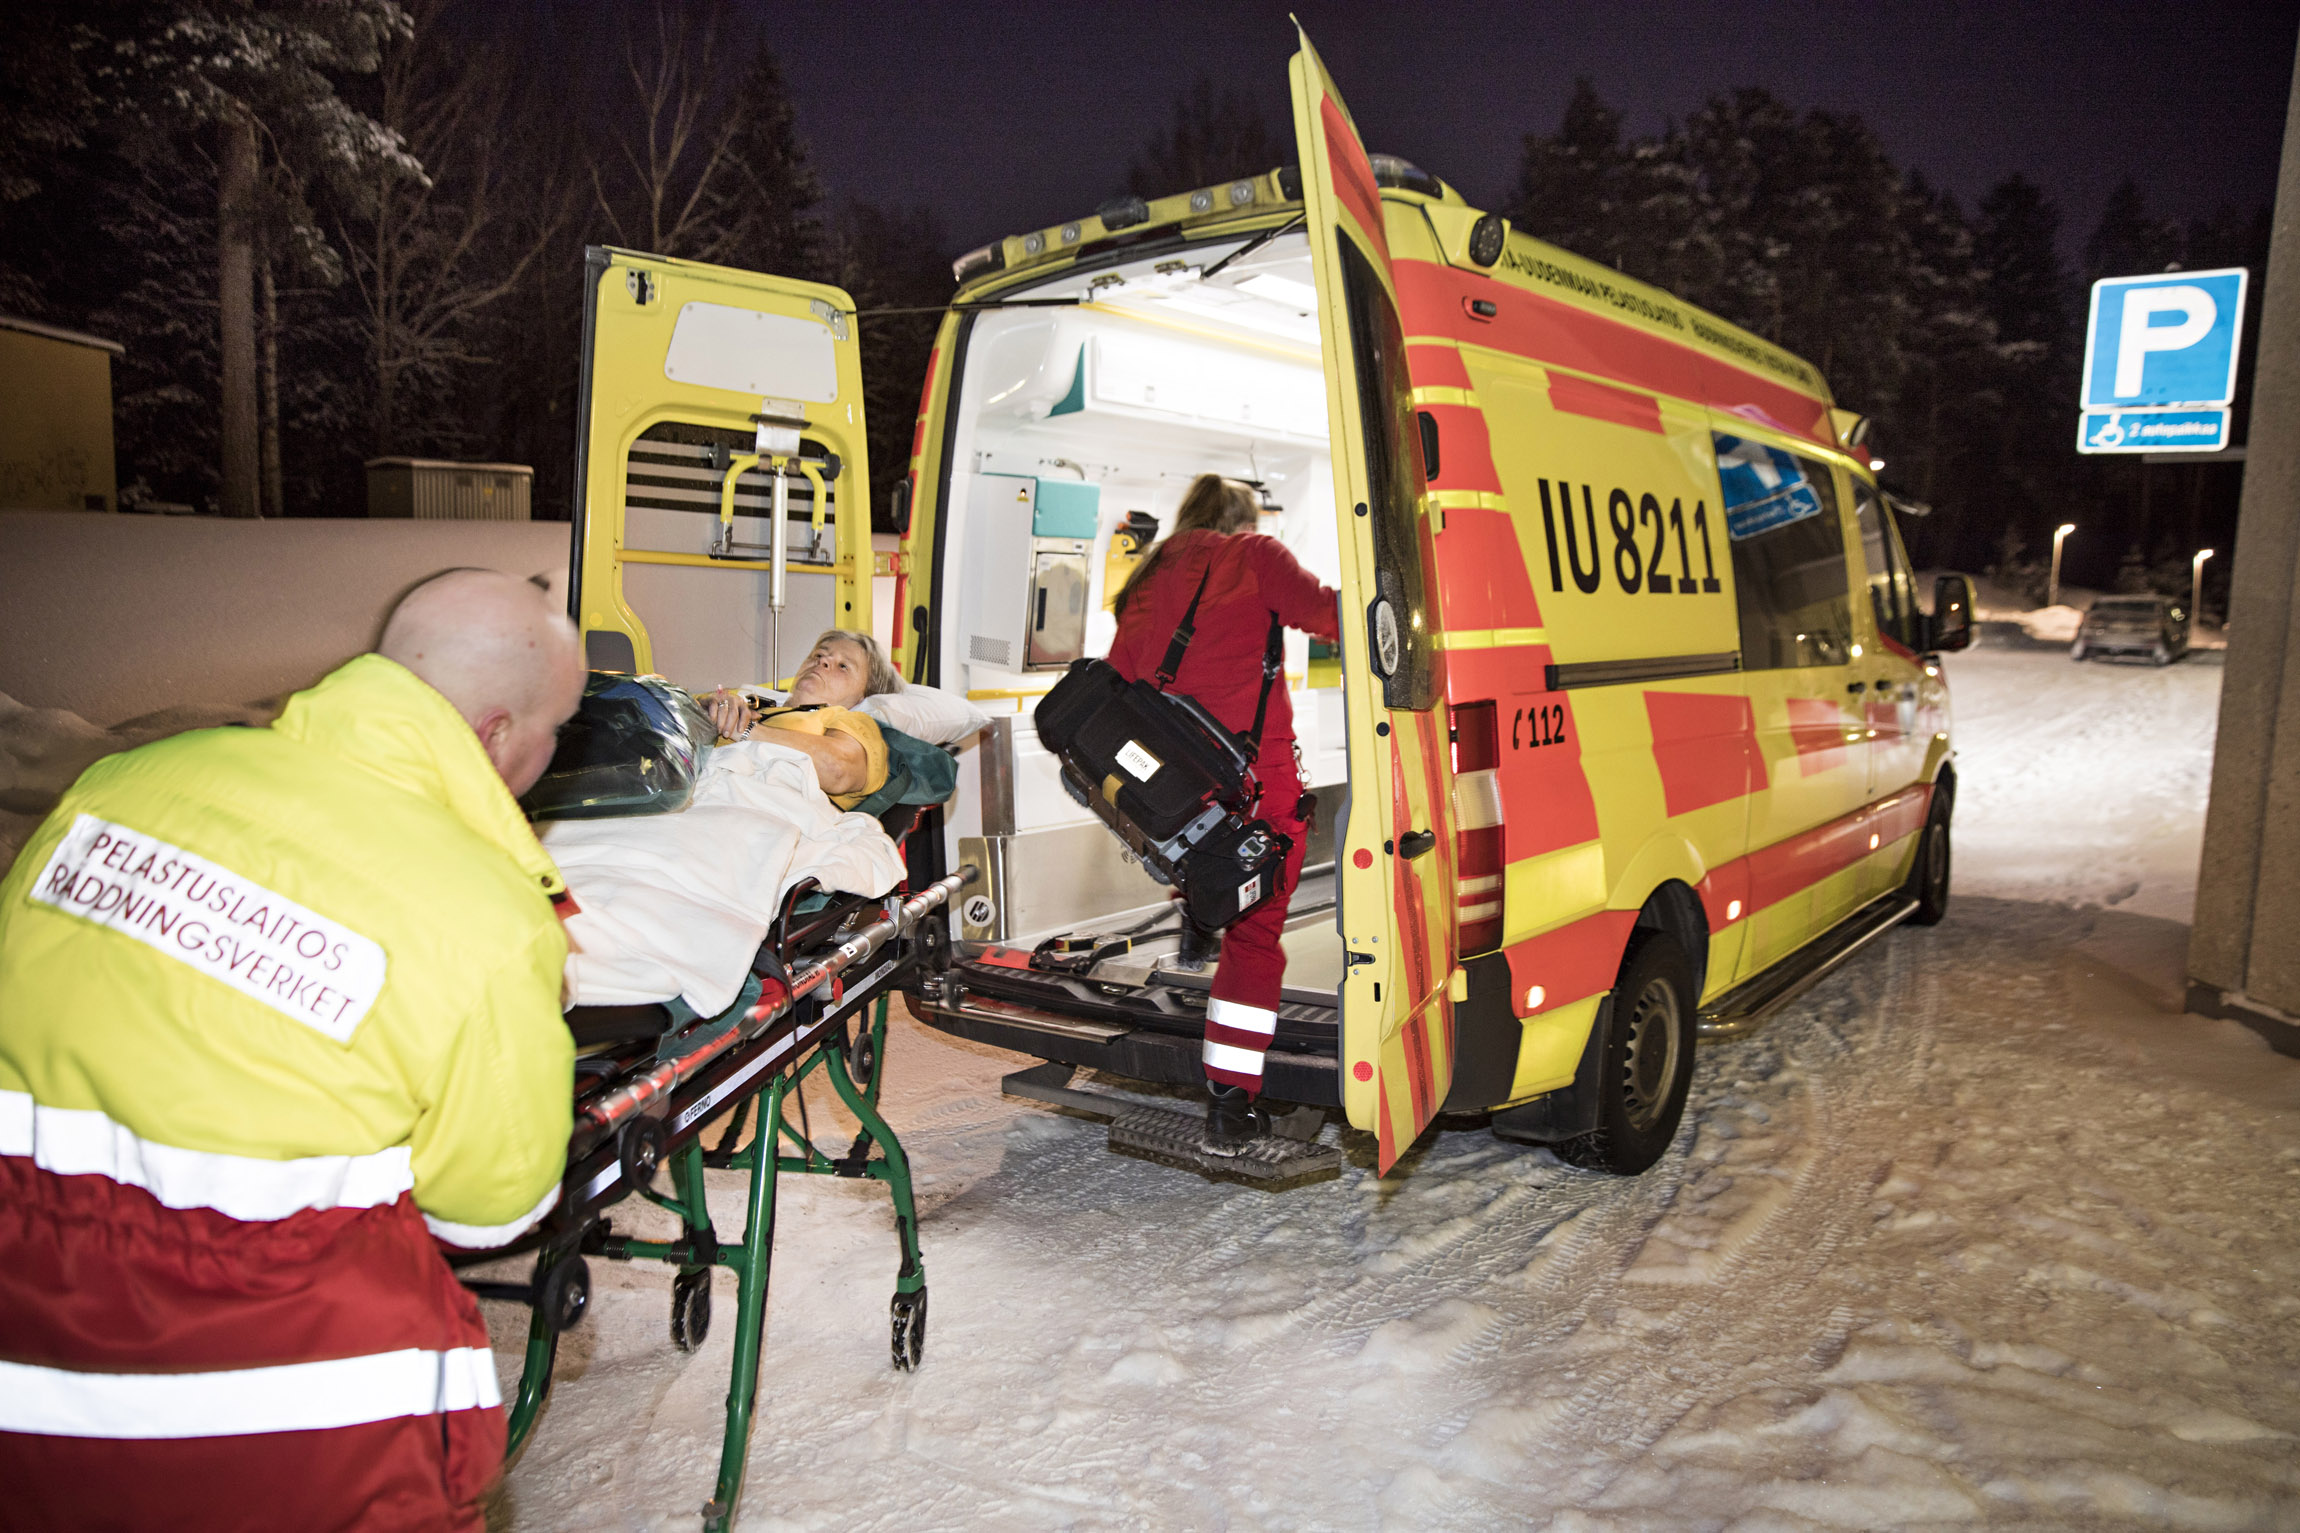 Itä-Uudenmaan pelastuslaitoksen yksikkö IU8211 on lähdössä hätäajoon kohti Helsinkiä ja Meilahden sairaalaa.